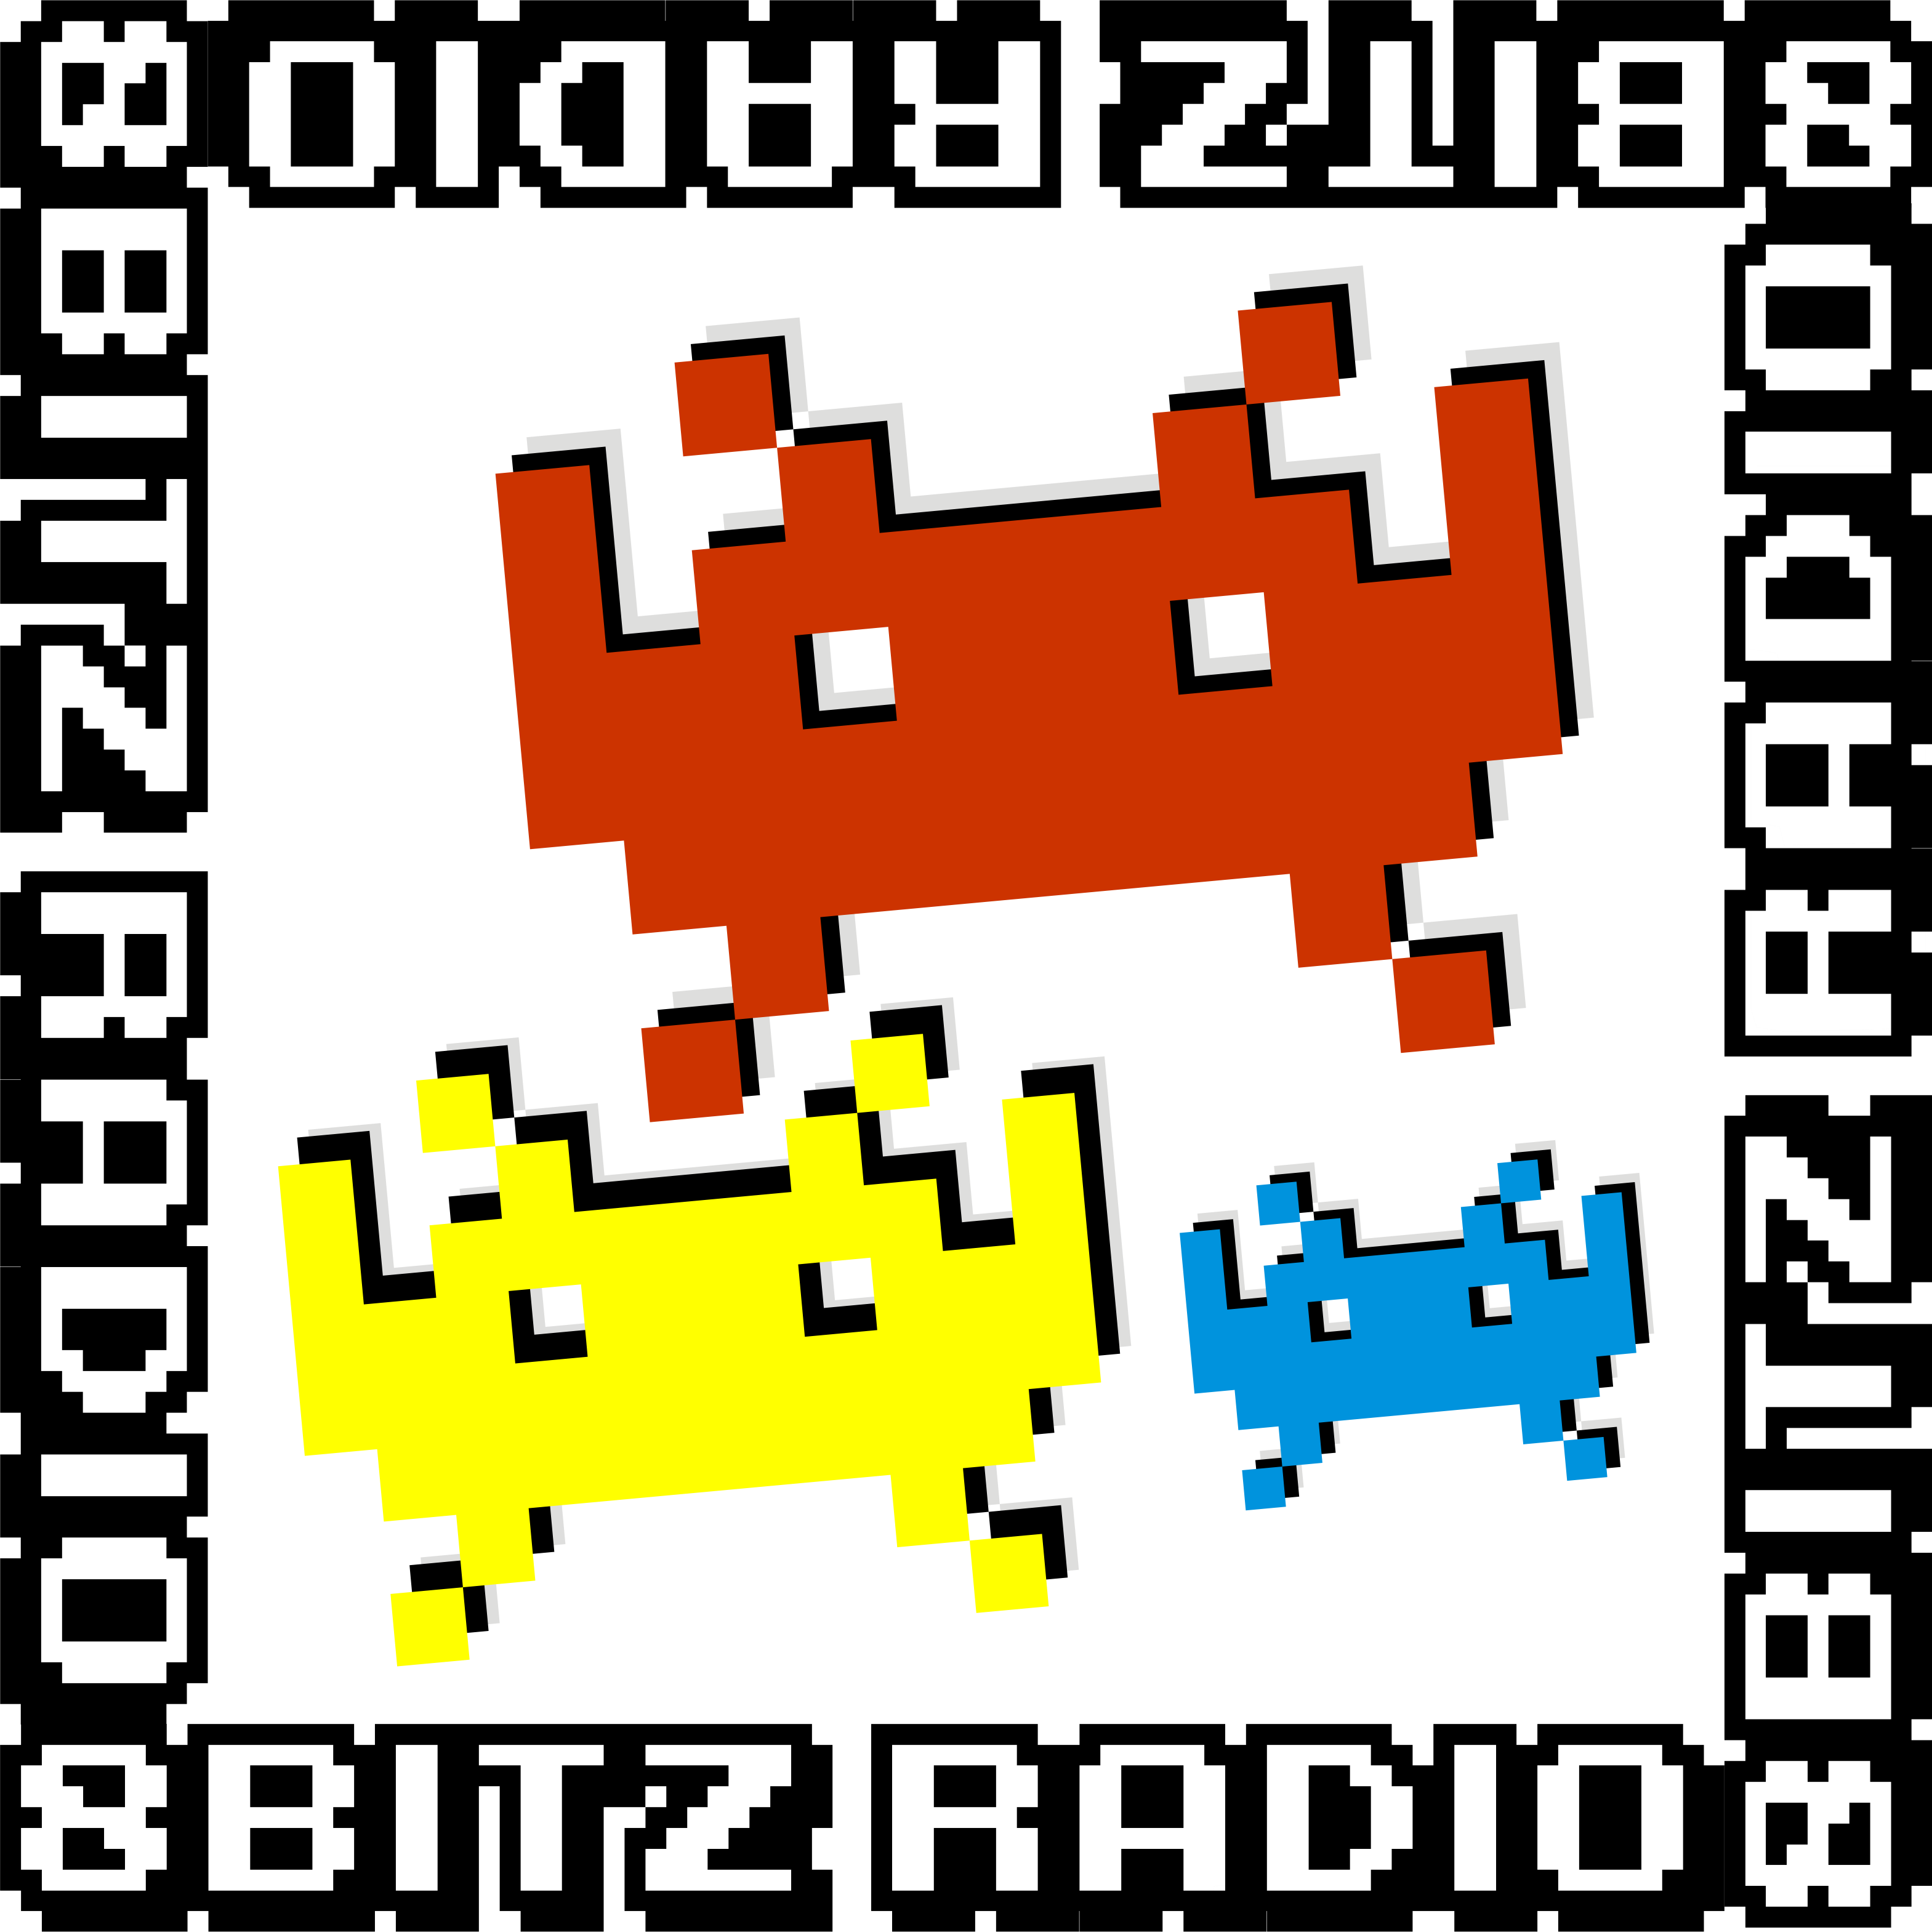 8Bitz Radio